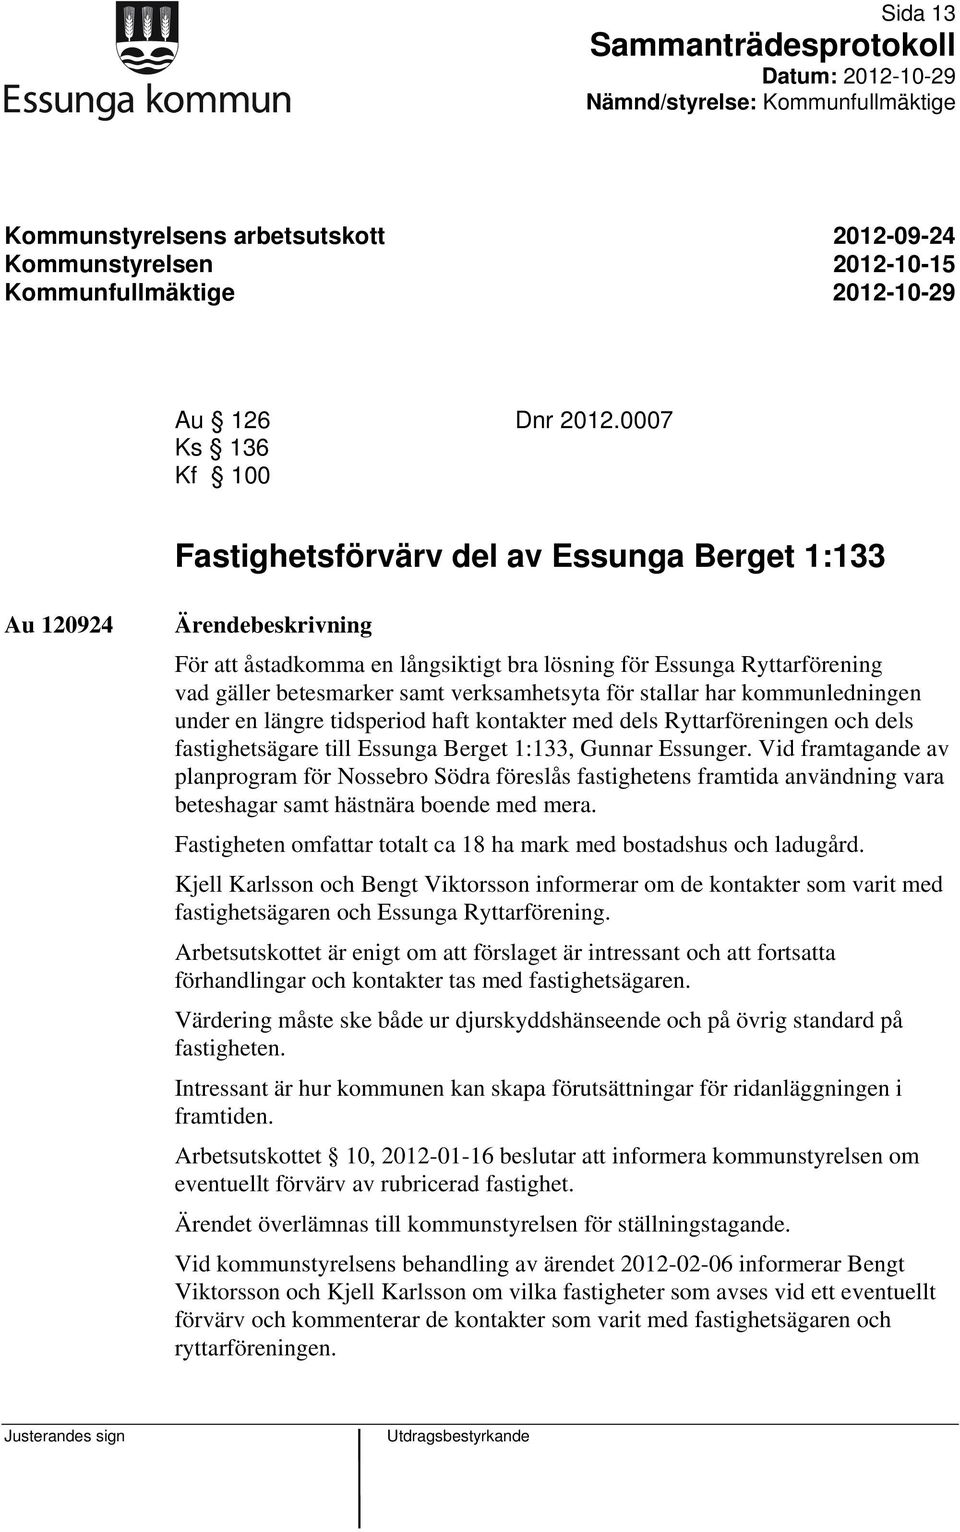 verksamhetsyta för stallar har kommunledningen under en längre tidsperiod haft kontakter med dels Ryttarföreningen och dels fastighetsägare till Essunga Berget 1:133, Gunnar Essunger.